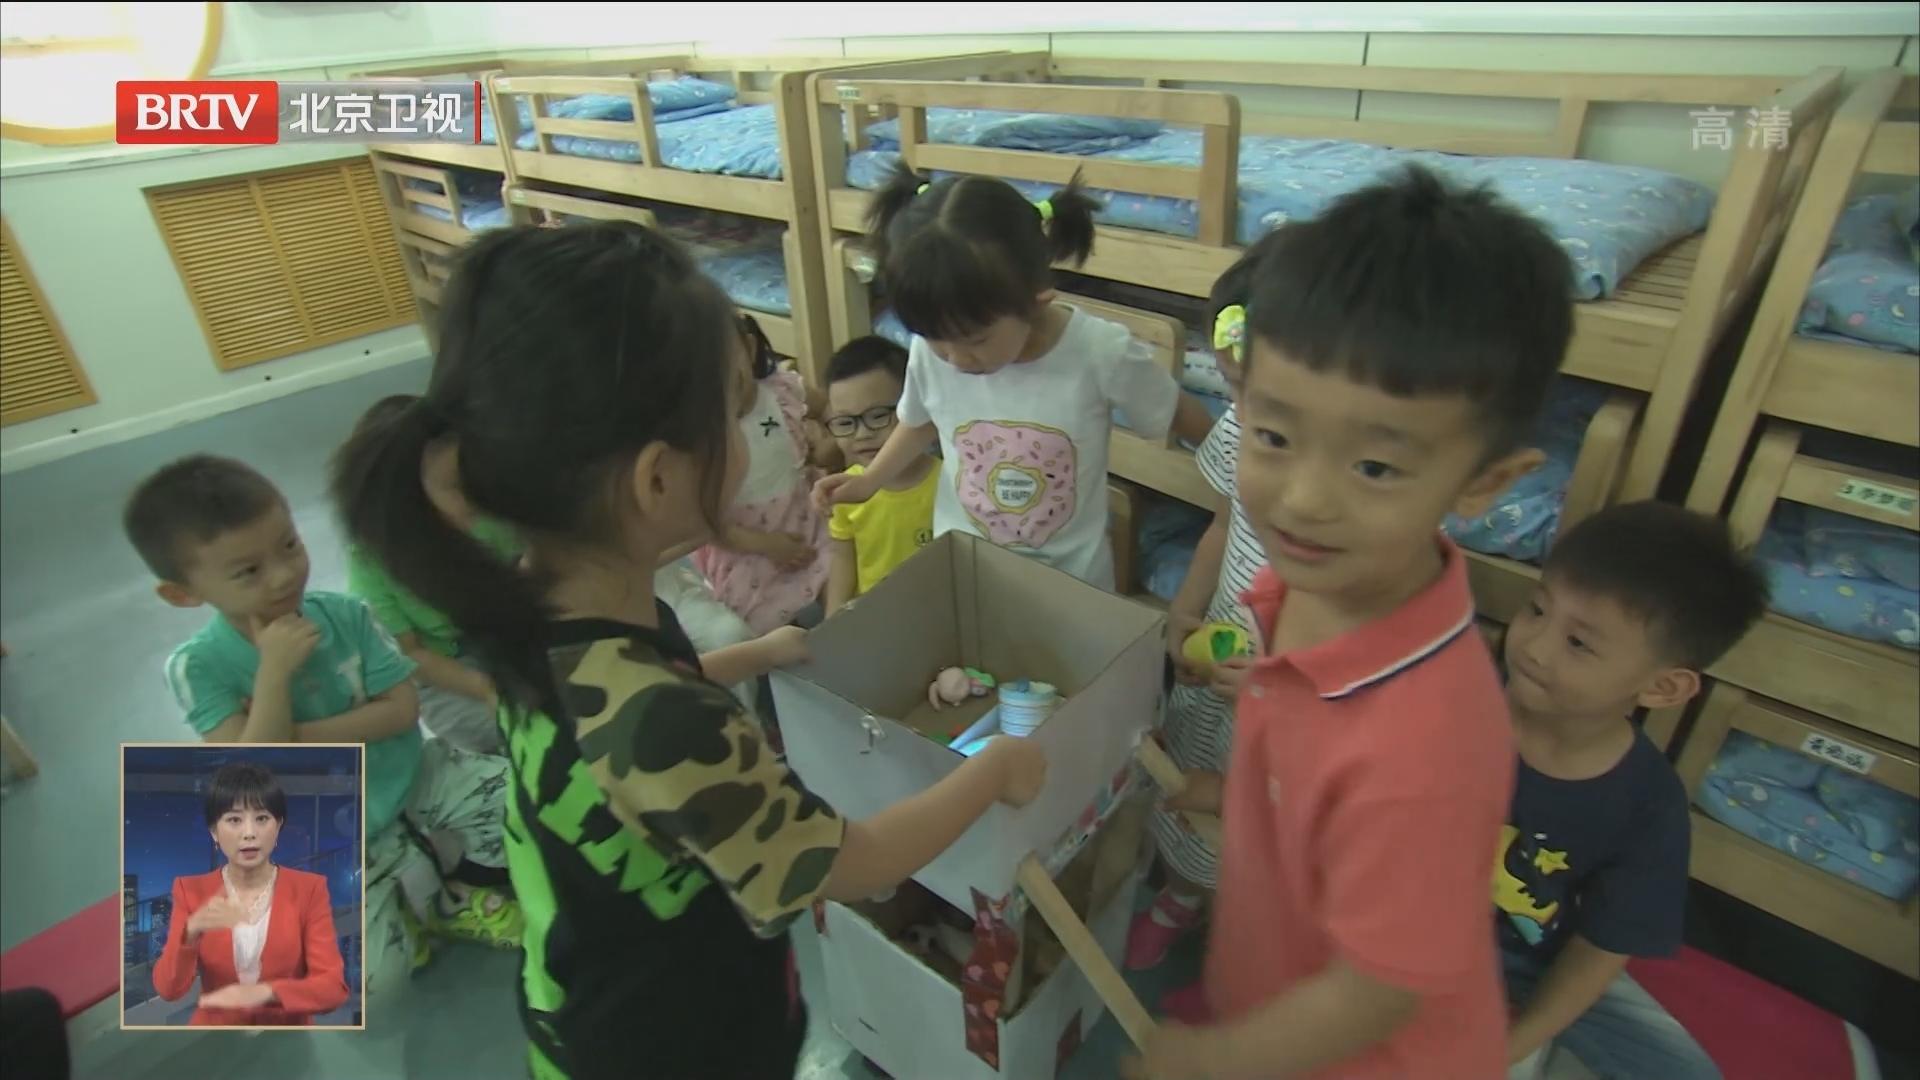 北京发布学前教育发展提升行动计划 2025年普惠性幼儿园覆盖率达到90%